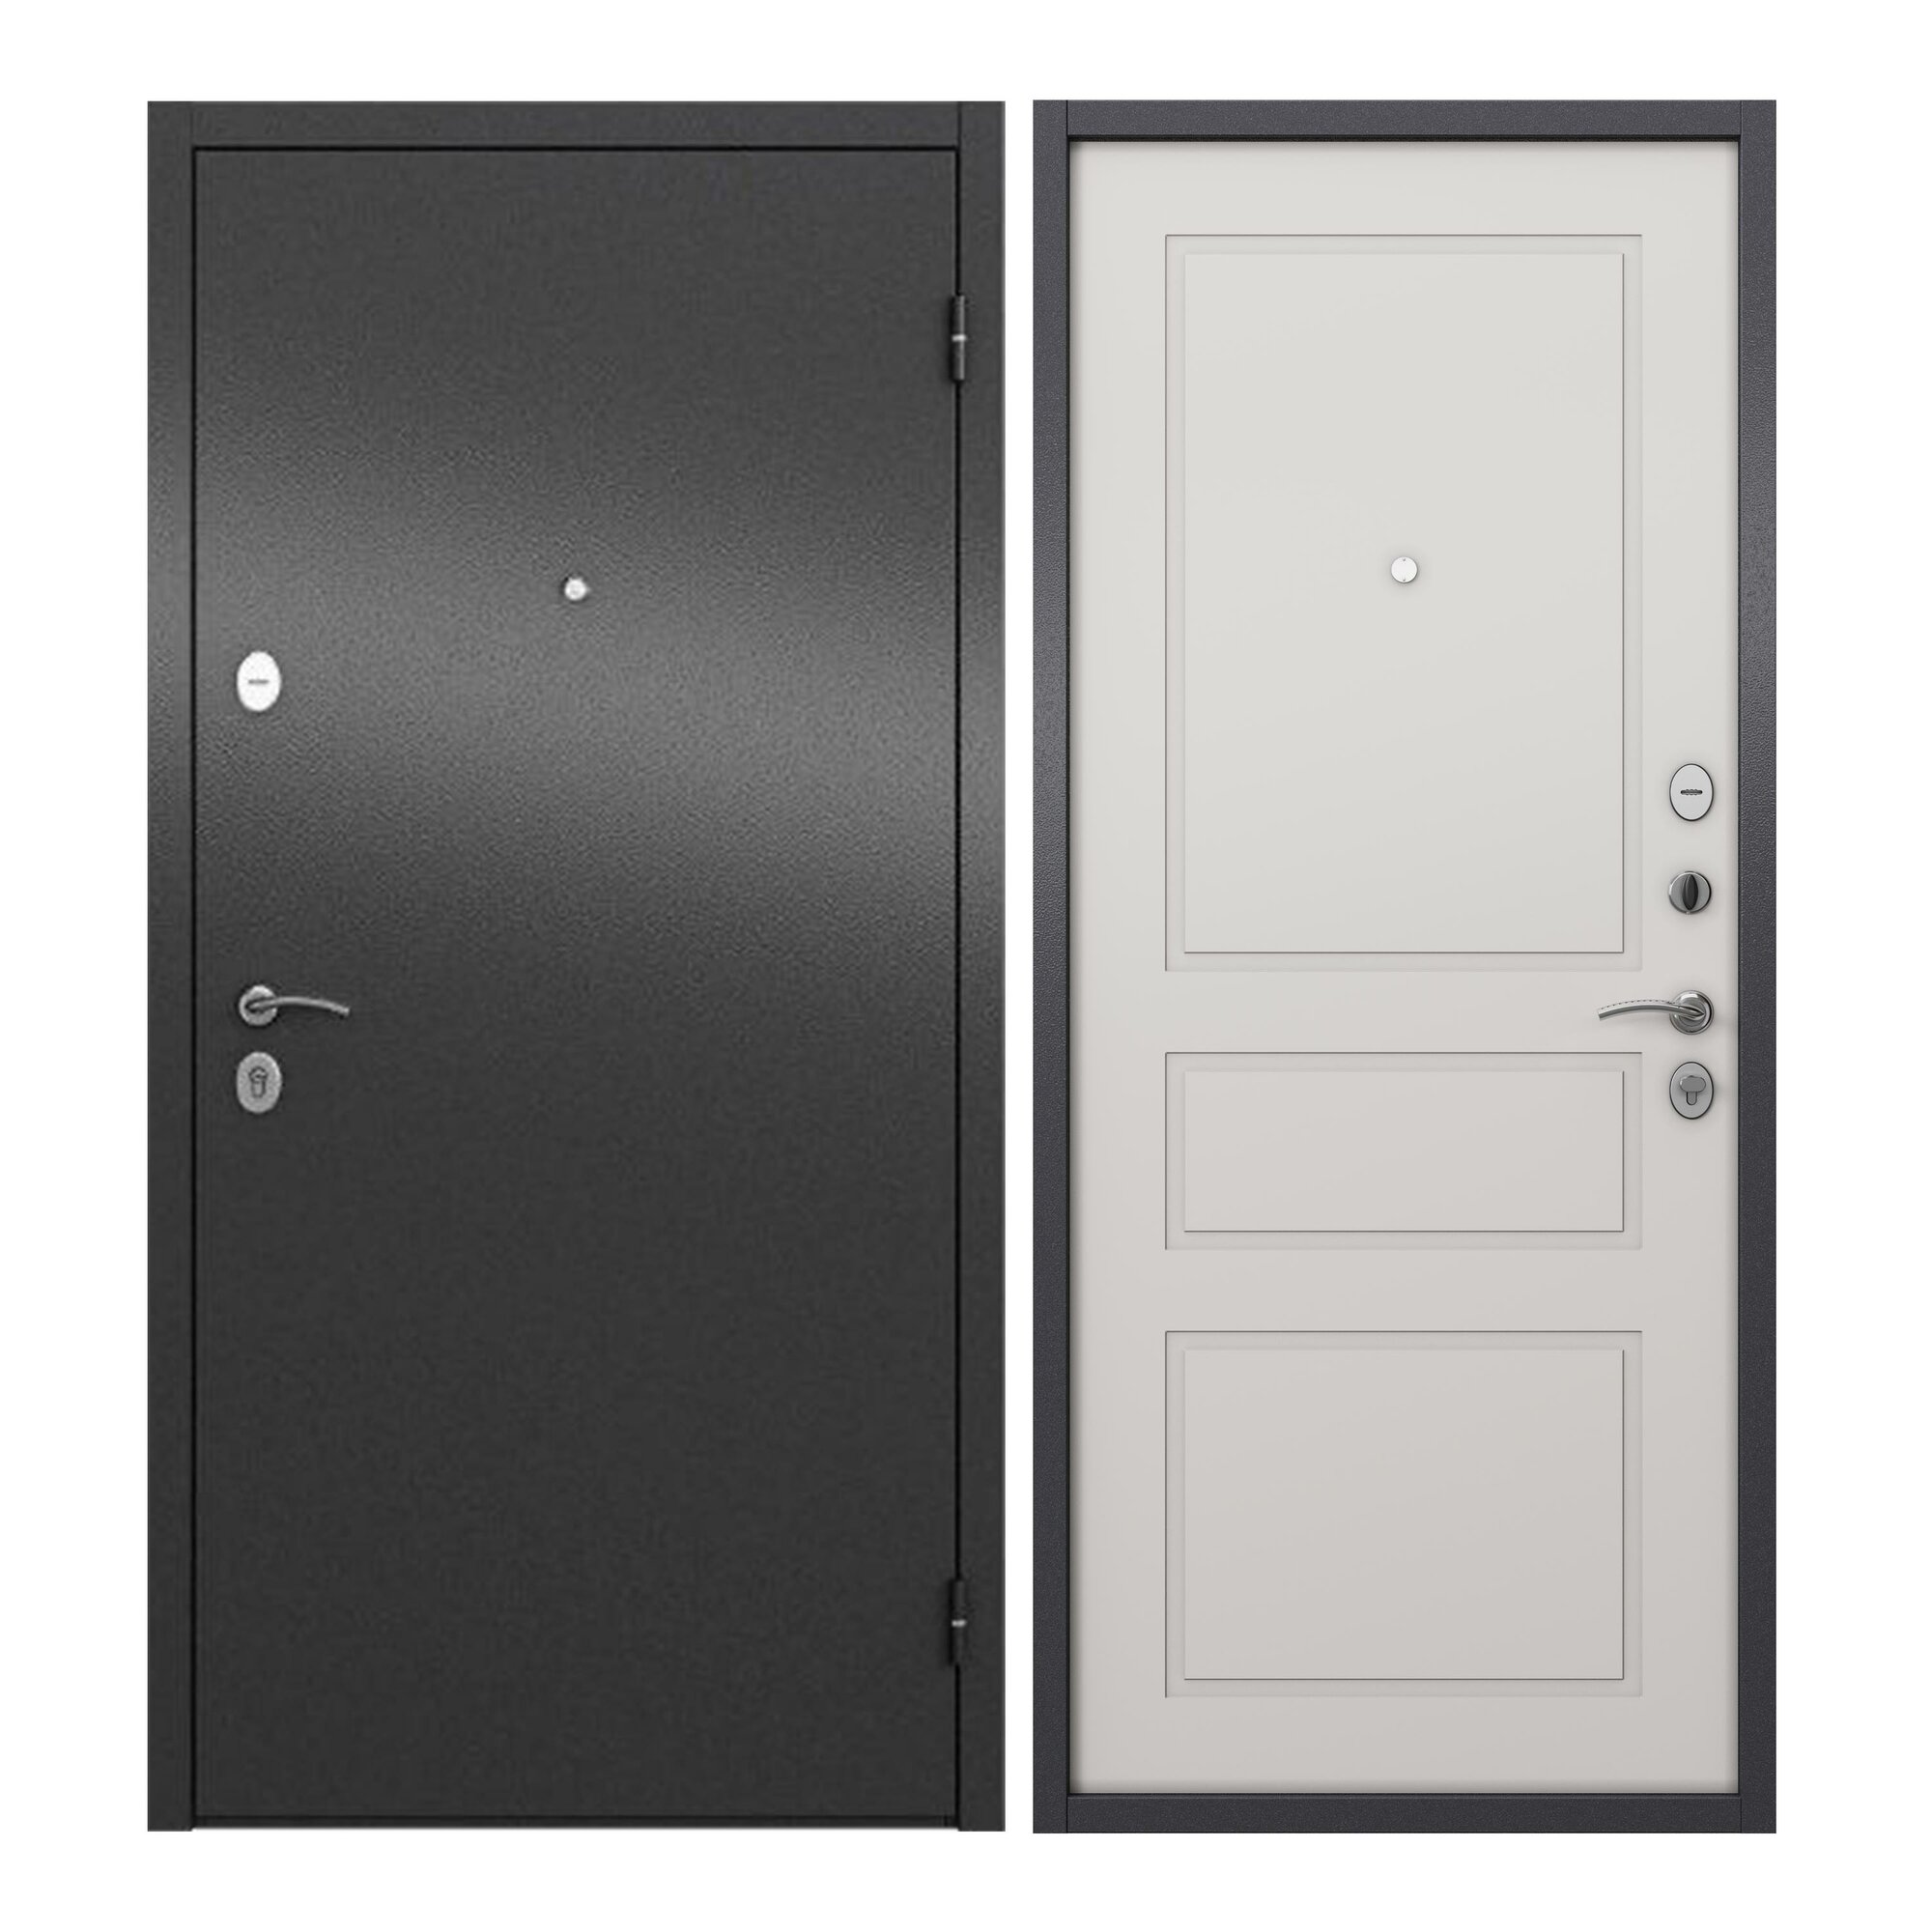 Дверь входная для квартиры ProLine металлическая Apartment 960х2050, правая, антивандальное покрытие, два уплотнителя, замки 4го и 2го класса, серый